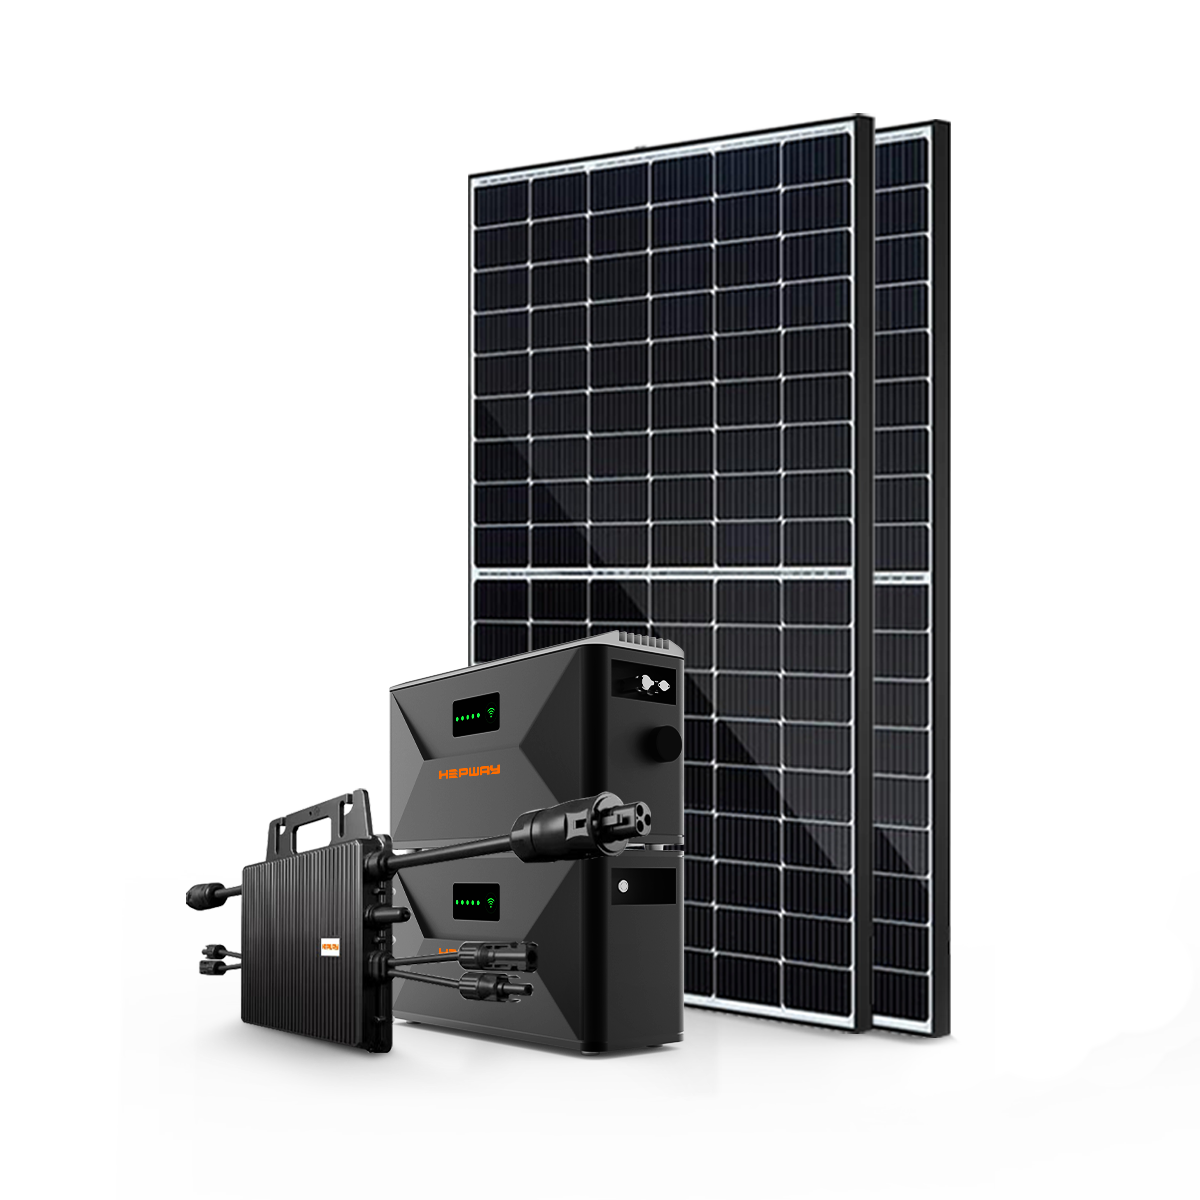 HEPWAY Balcony Solar Storage System = Solar Panel 800W + Energy Storage Battery(SF100-E + SF100X) + Micro-inverter 800W